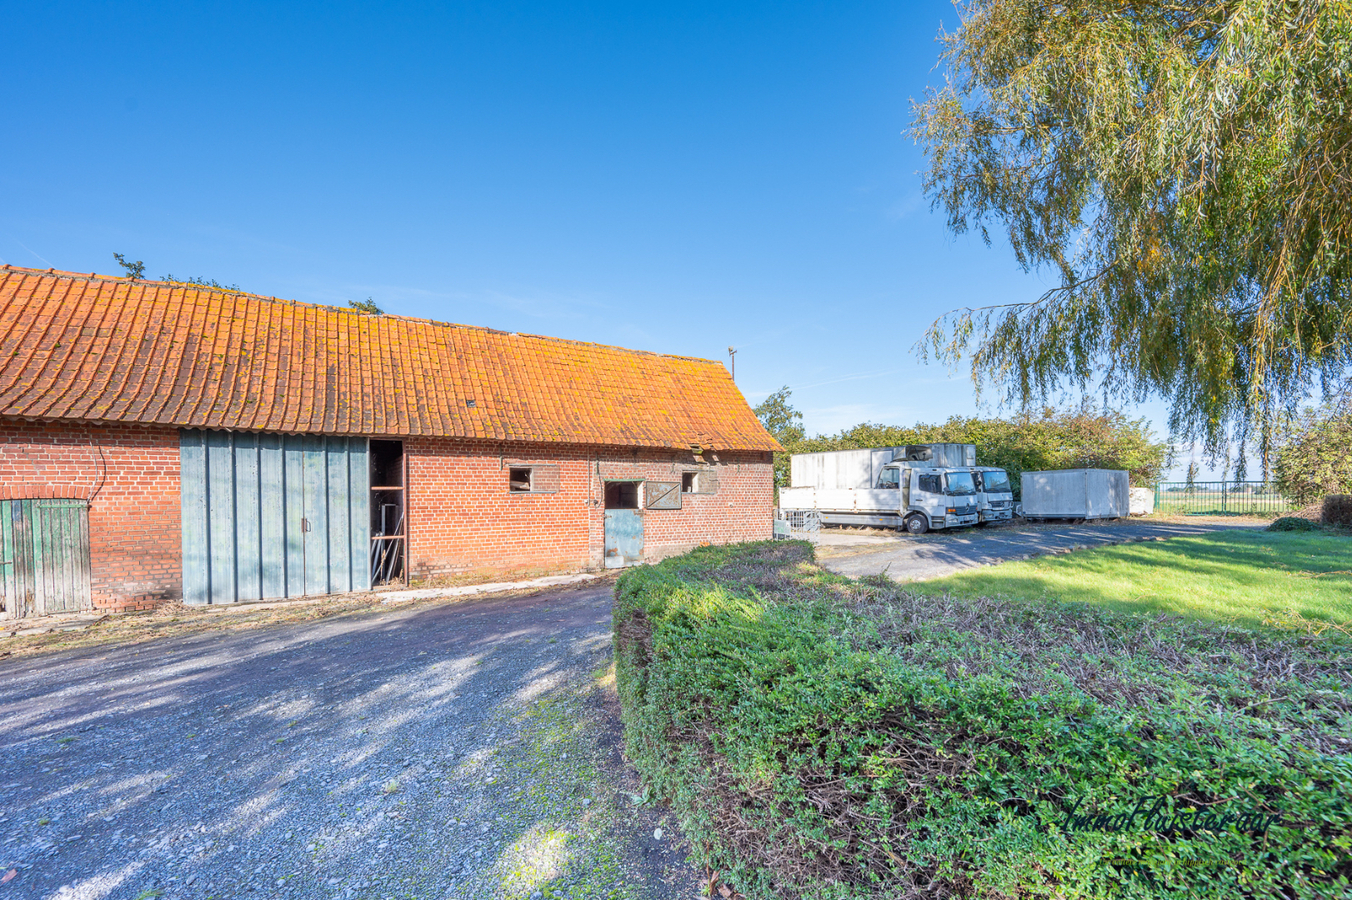 Property sold in Koolskamp